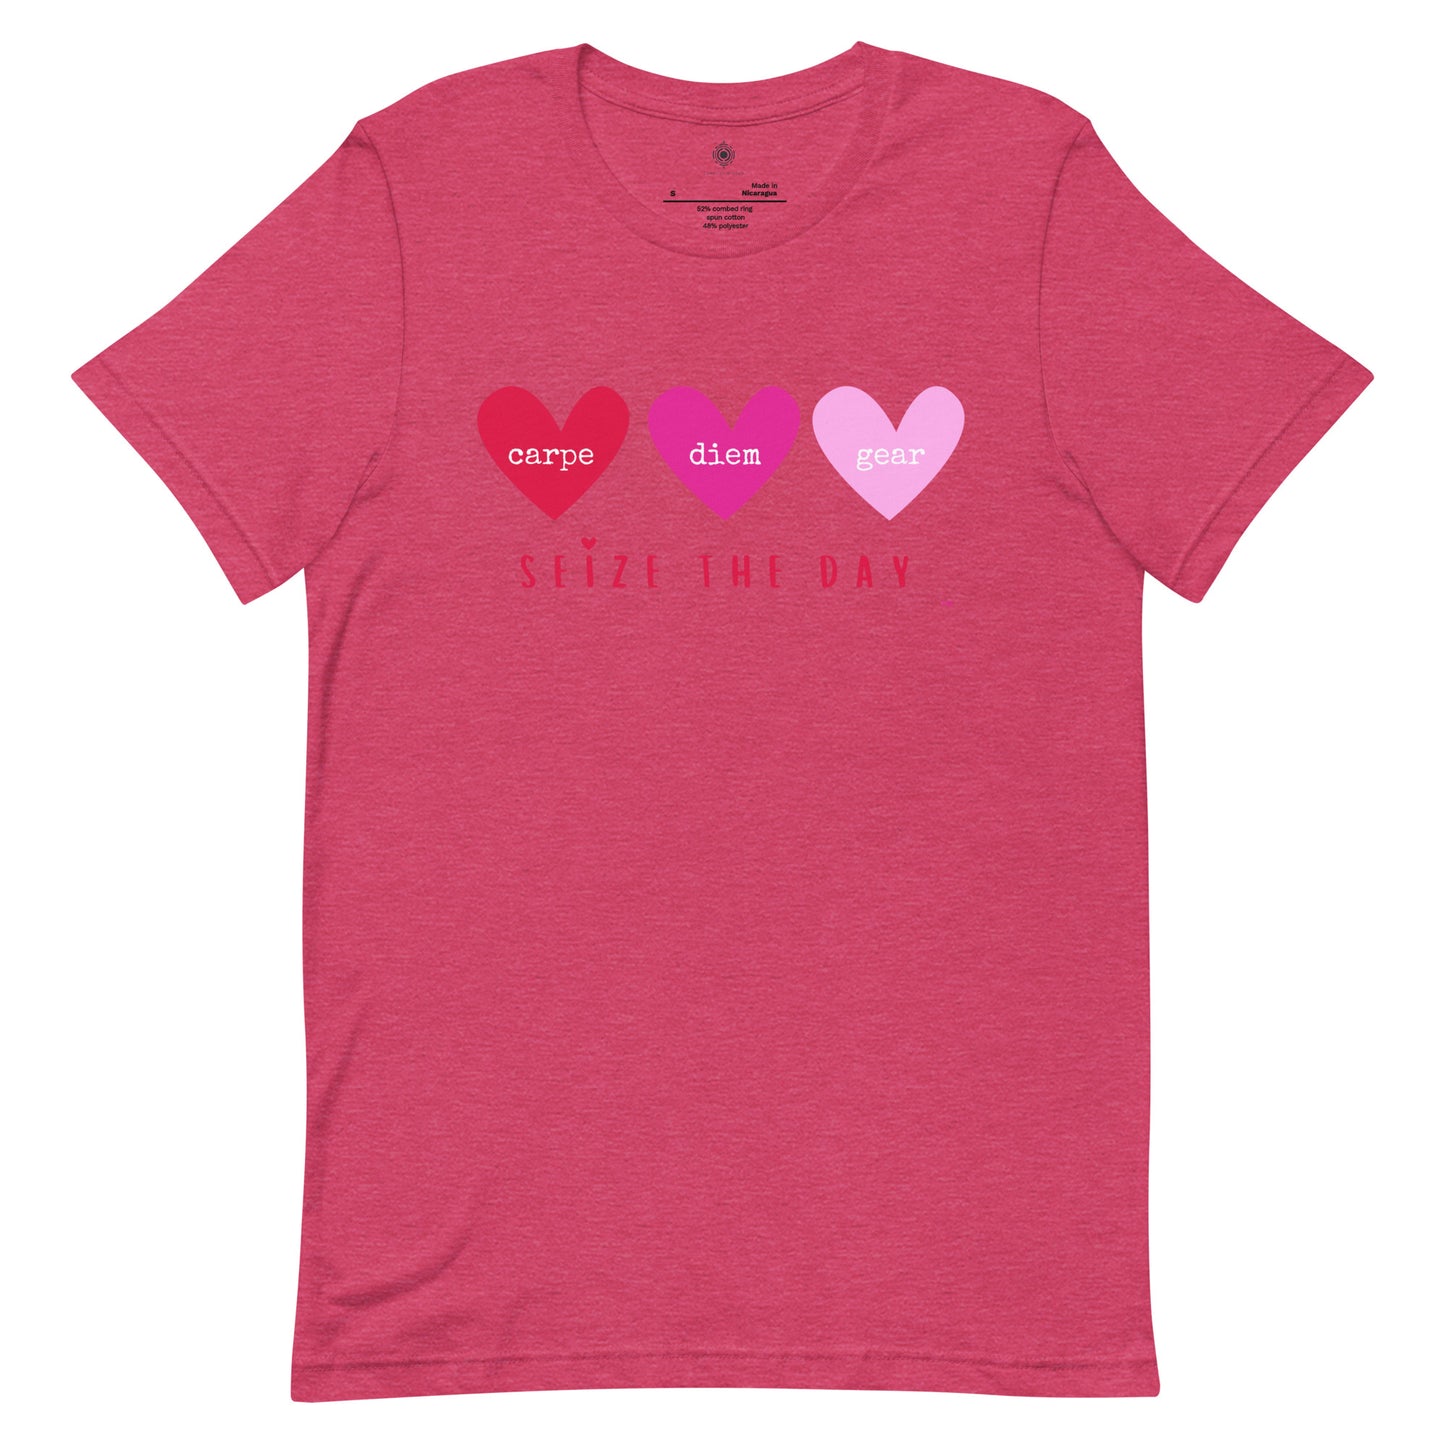 Carpe Diem Gear | Heart of the Matter | 3 Hearts | Unisex 100% Cotton T-Shirt